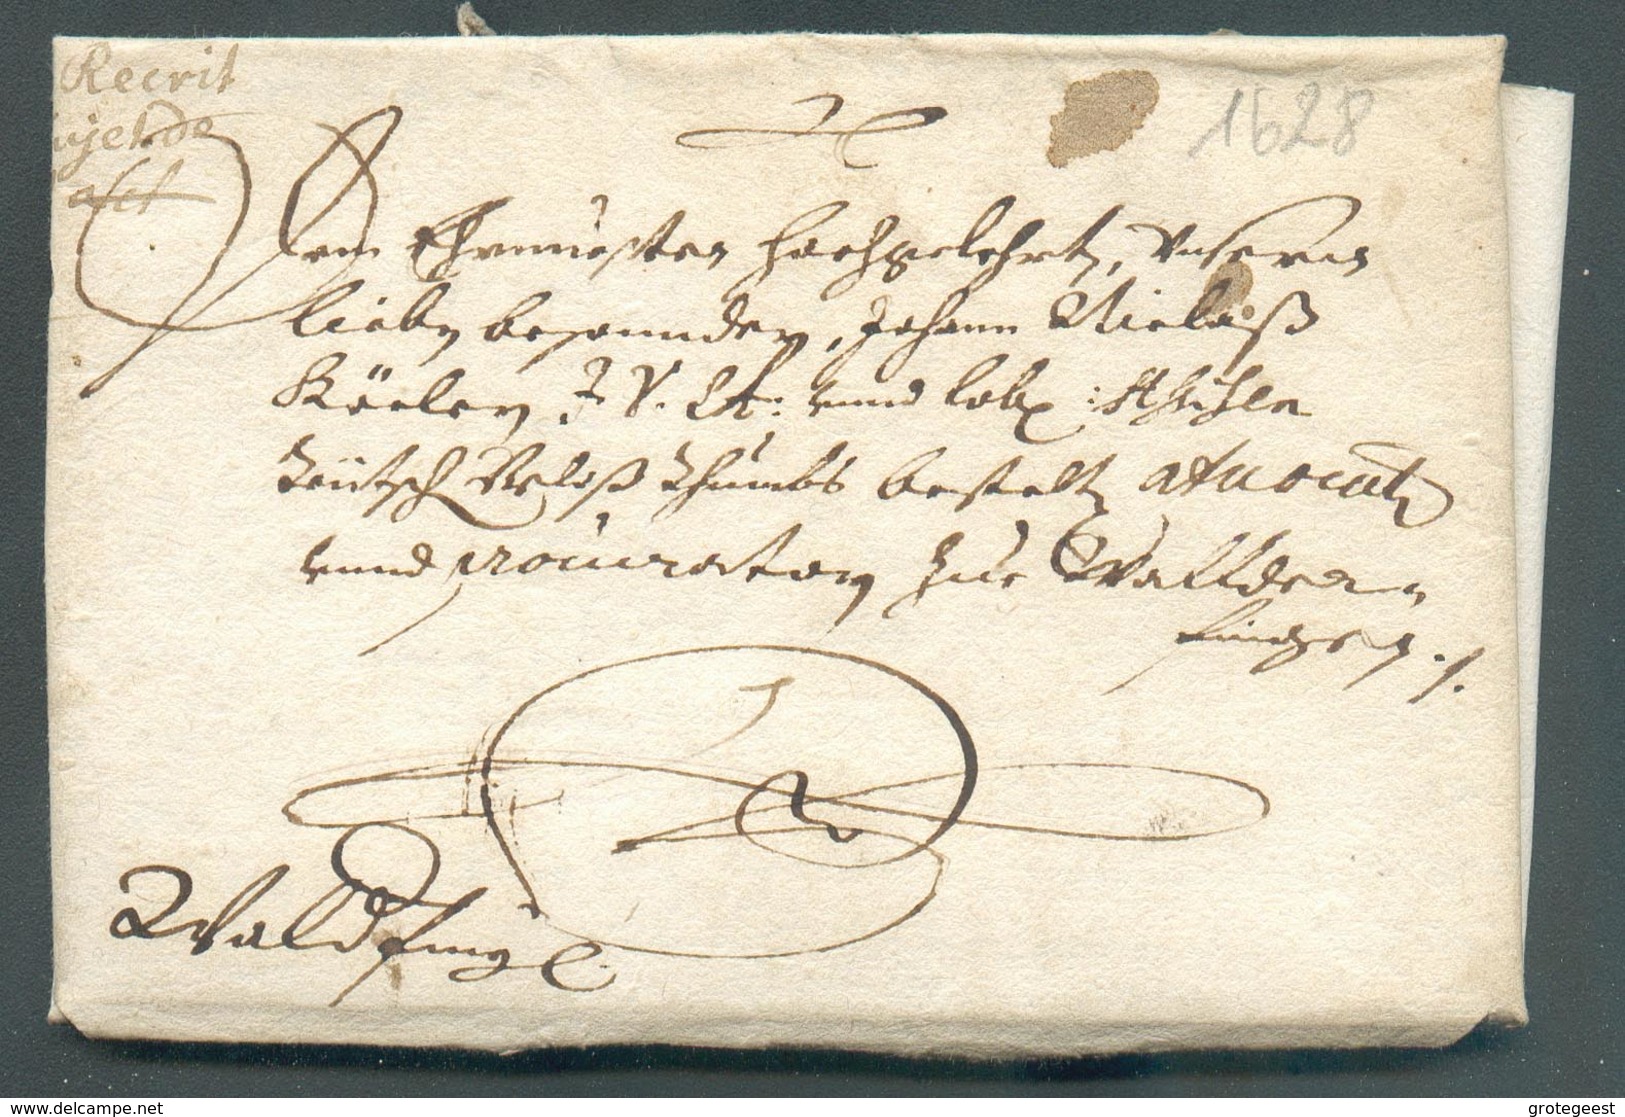 LAC Du Comte De Sully à Mr. Köler à Hipelstorff Mai 1628 (régisseur Des Forges De Bergh Au Luxembourg) Vers Walferdange - ...-1852 Prephilately